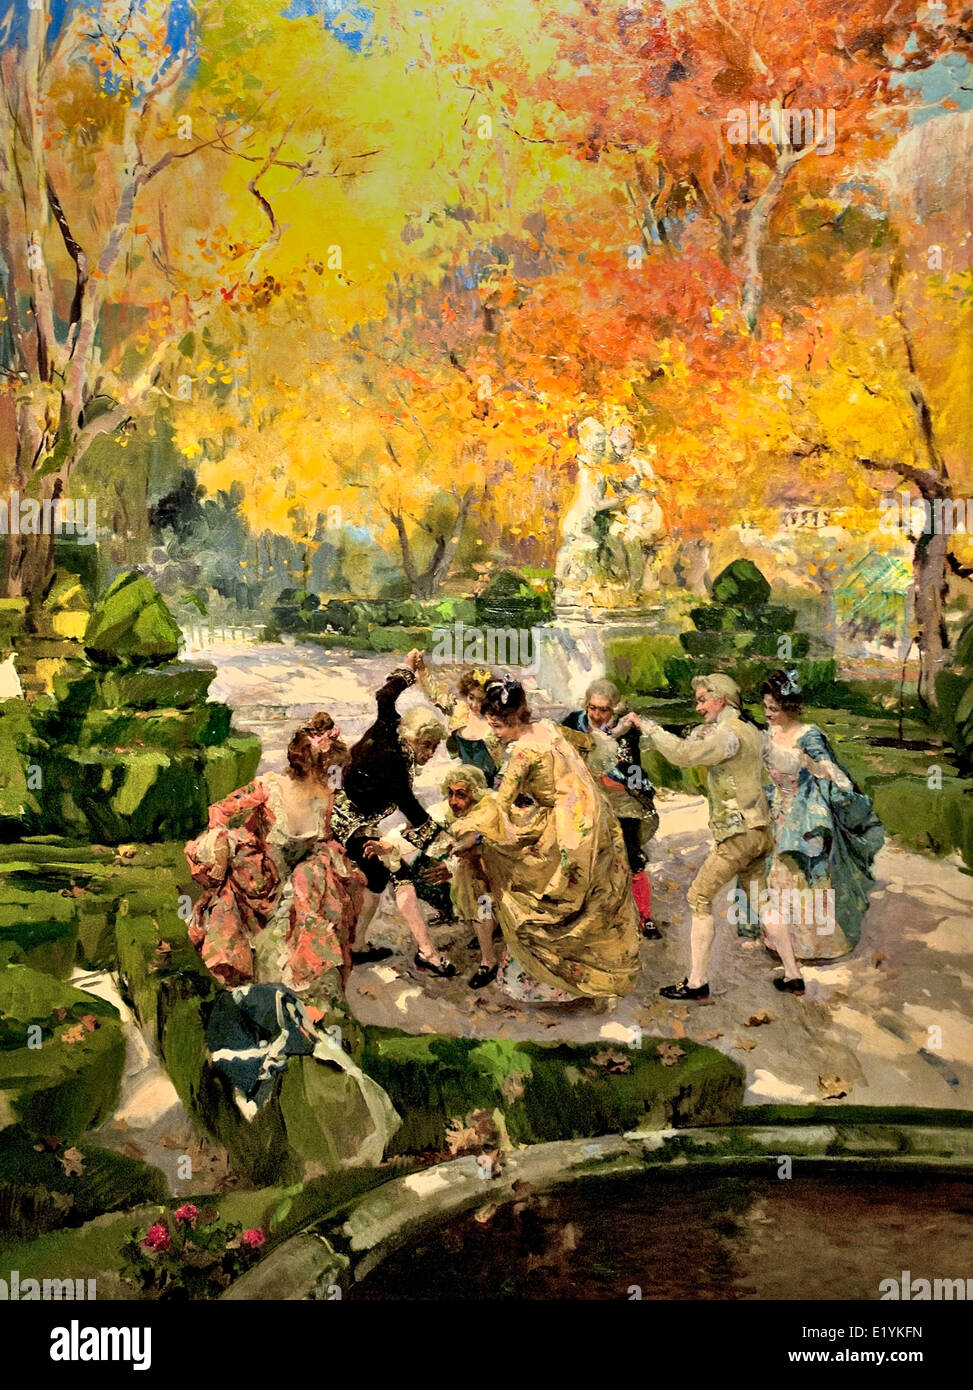 FIGURAS DE CASACAS JUGANDO EN UN JARDIN - Jacken-Mäntel-Figuren spielen IN einem Garten Joaquín Sorolla y Bastida 1863 –1923 Spanien Stockfoto